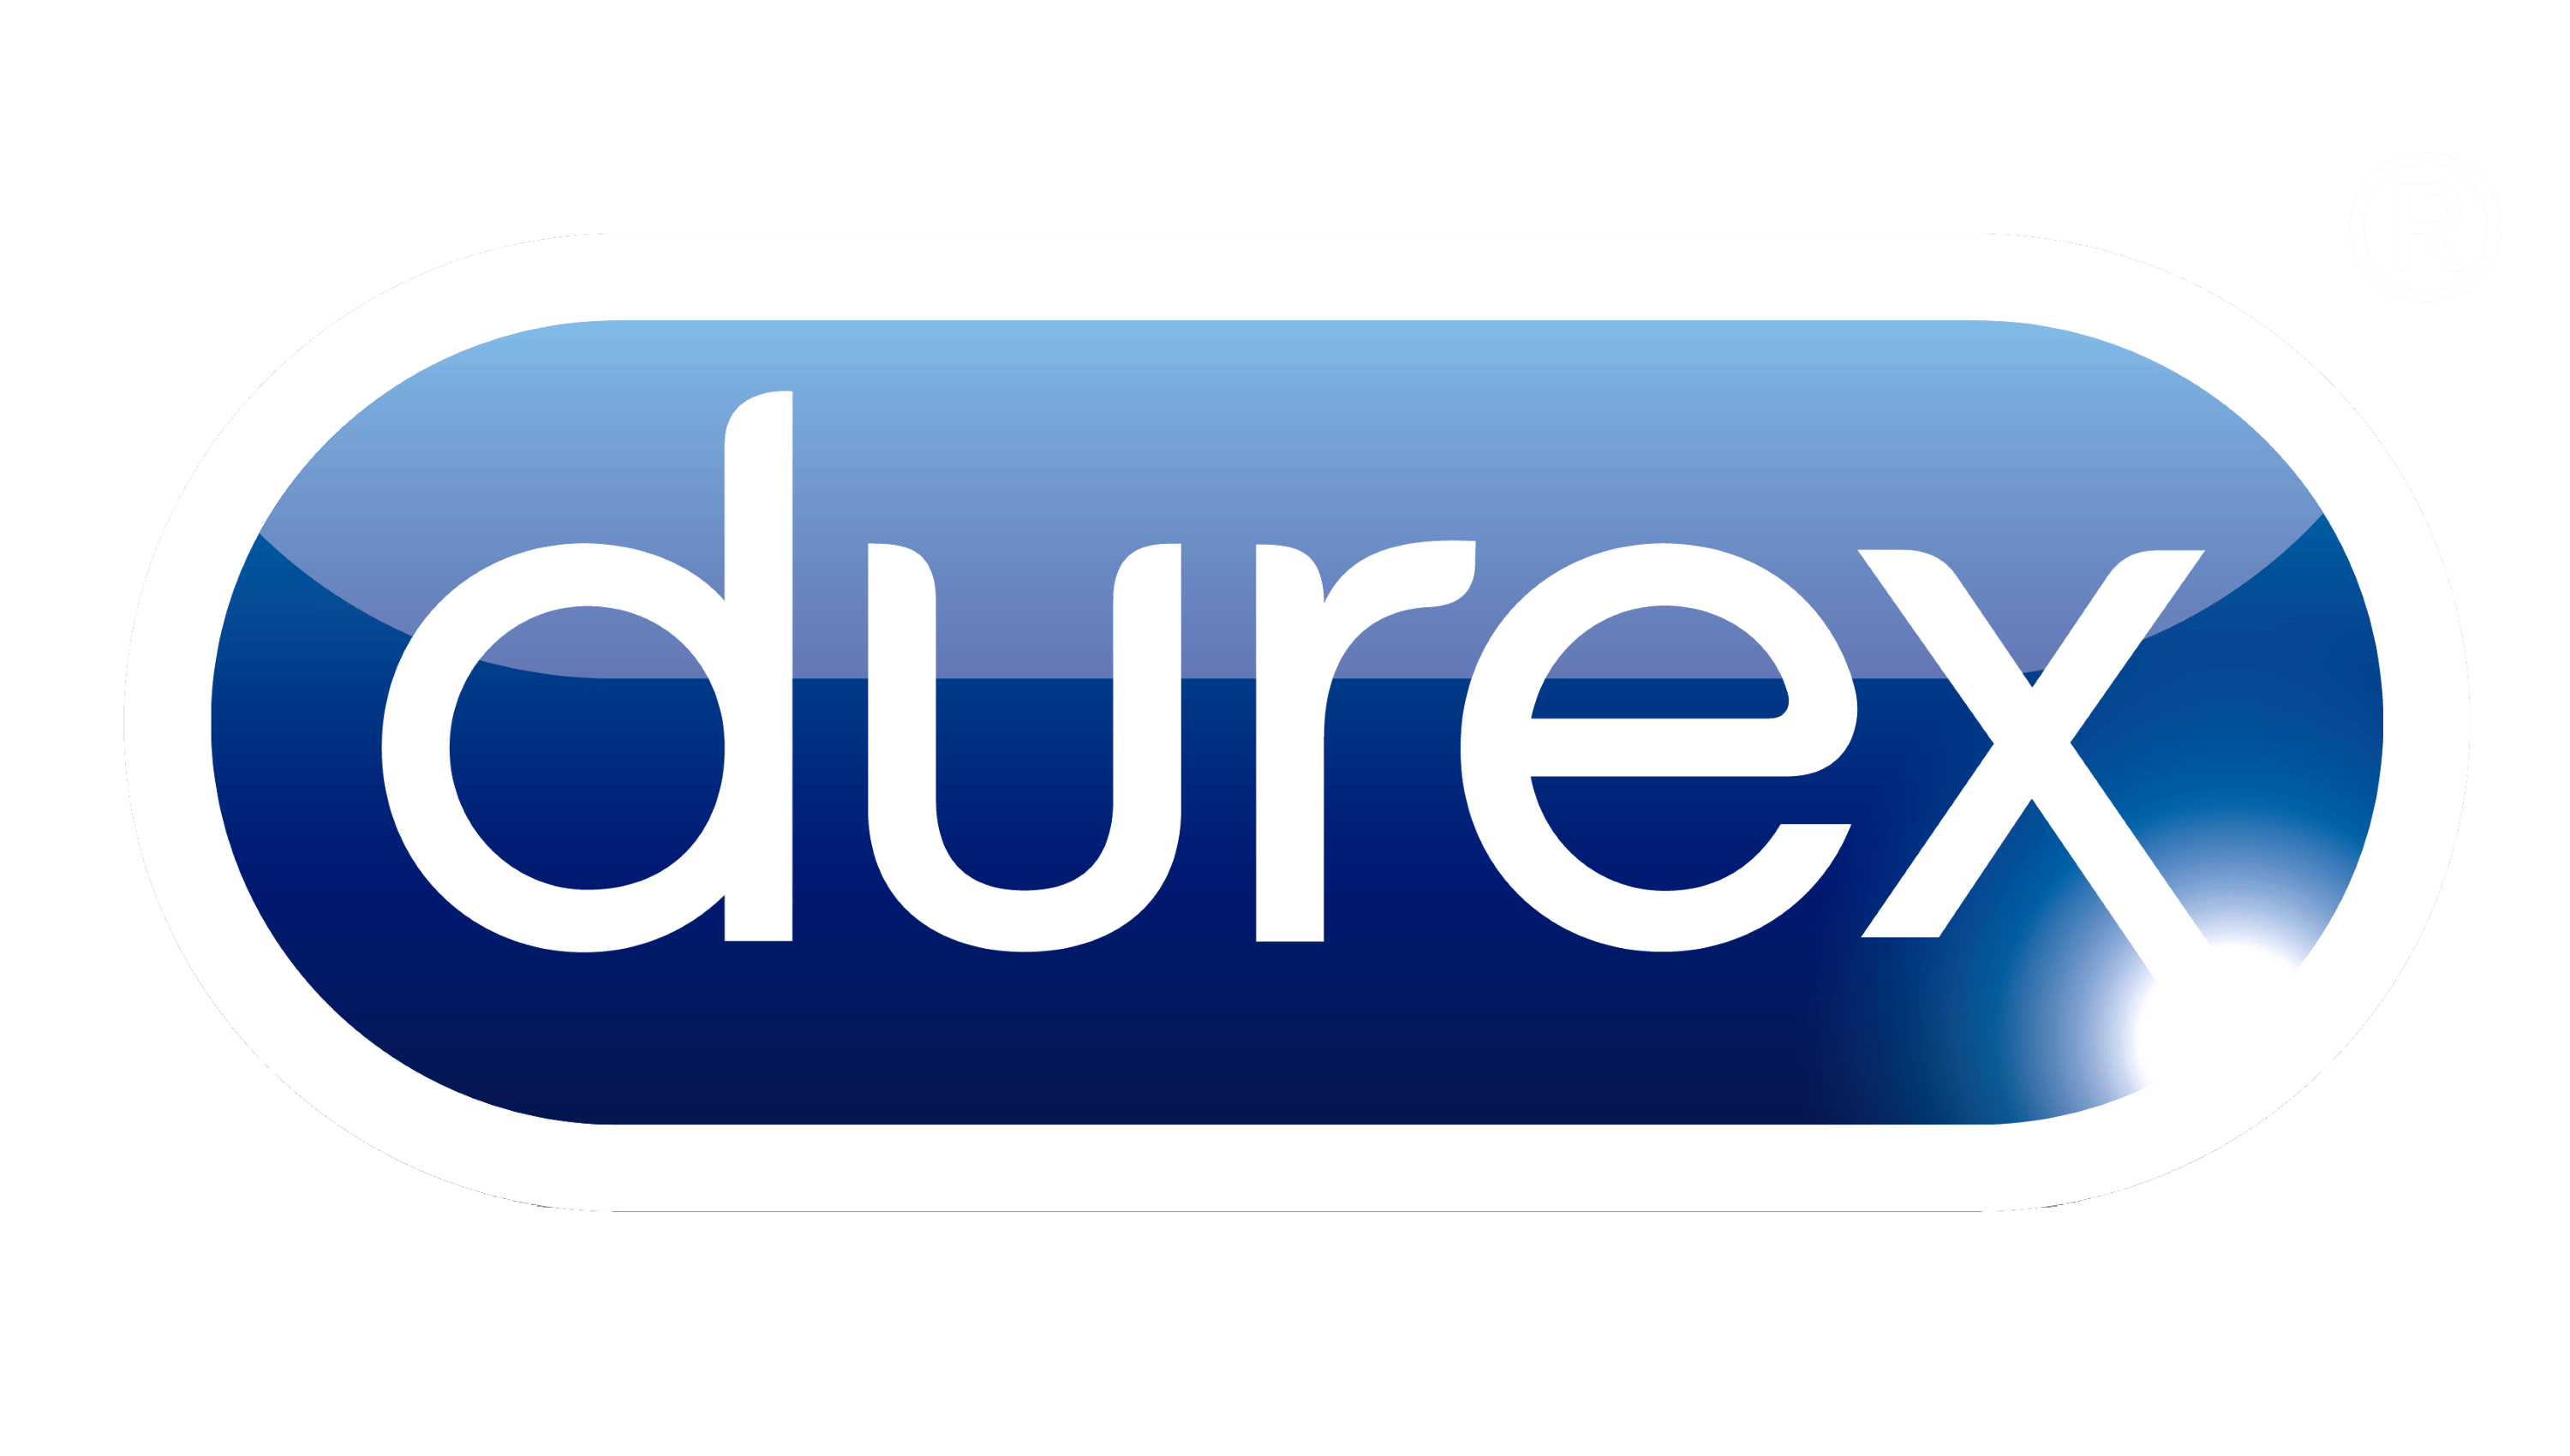 DUREX - Niram